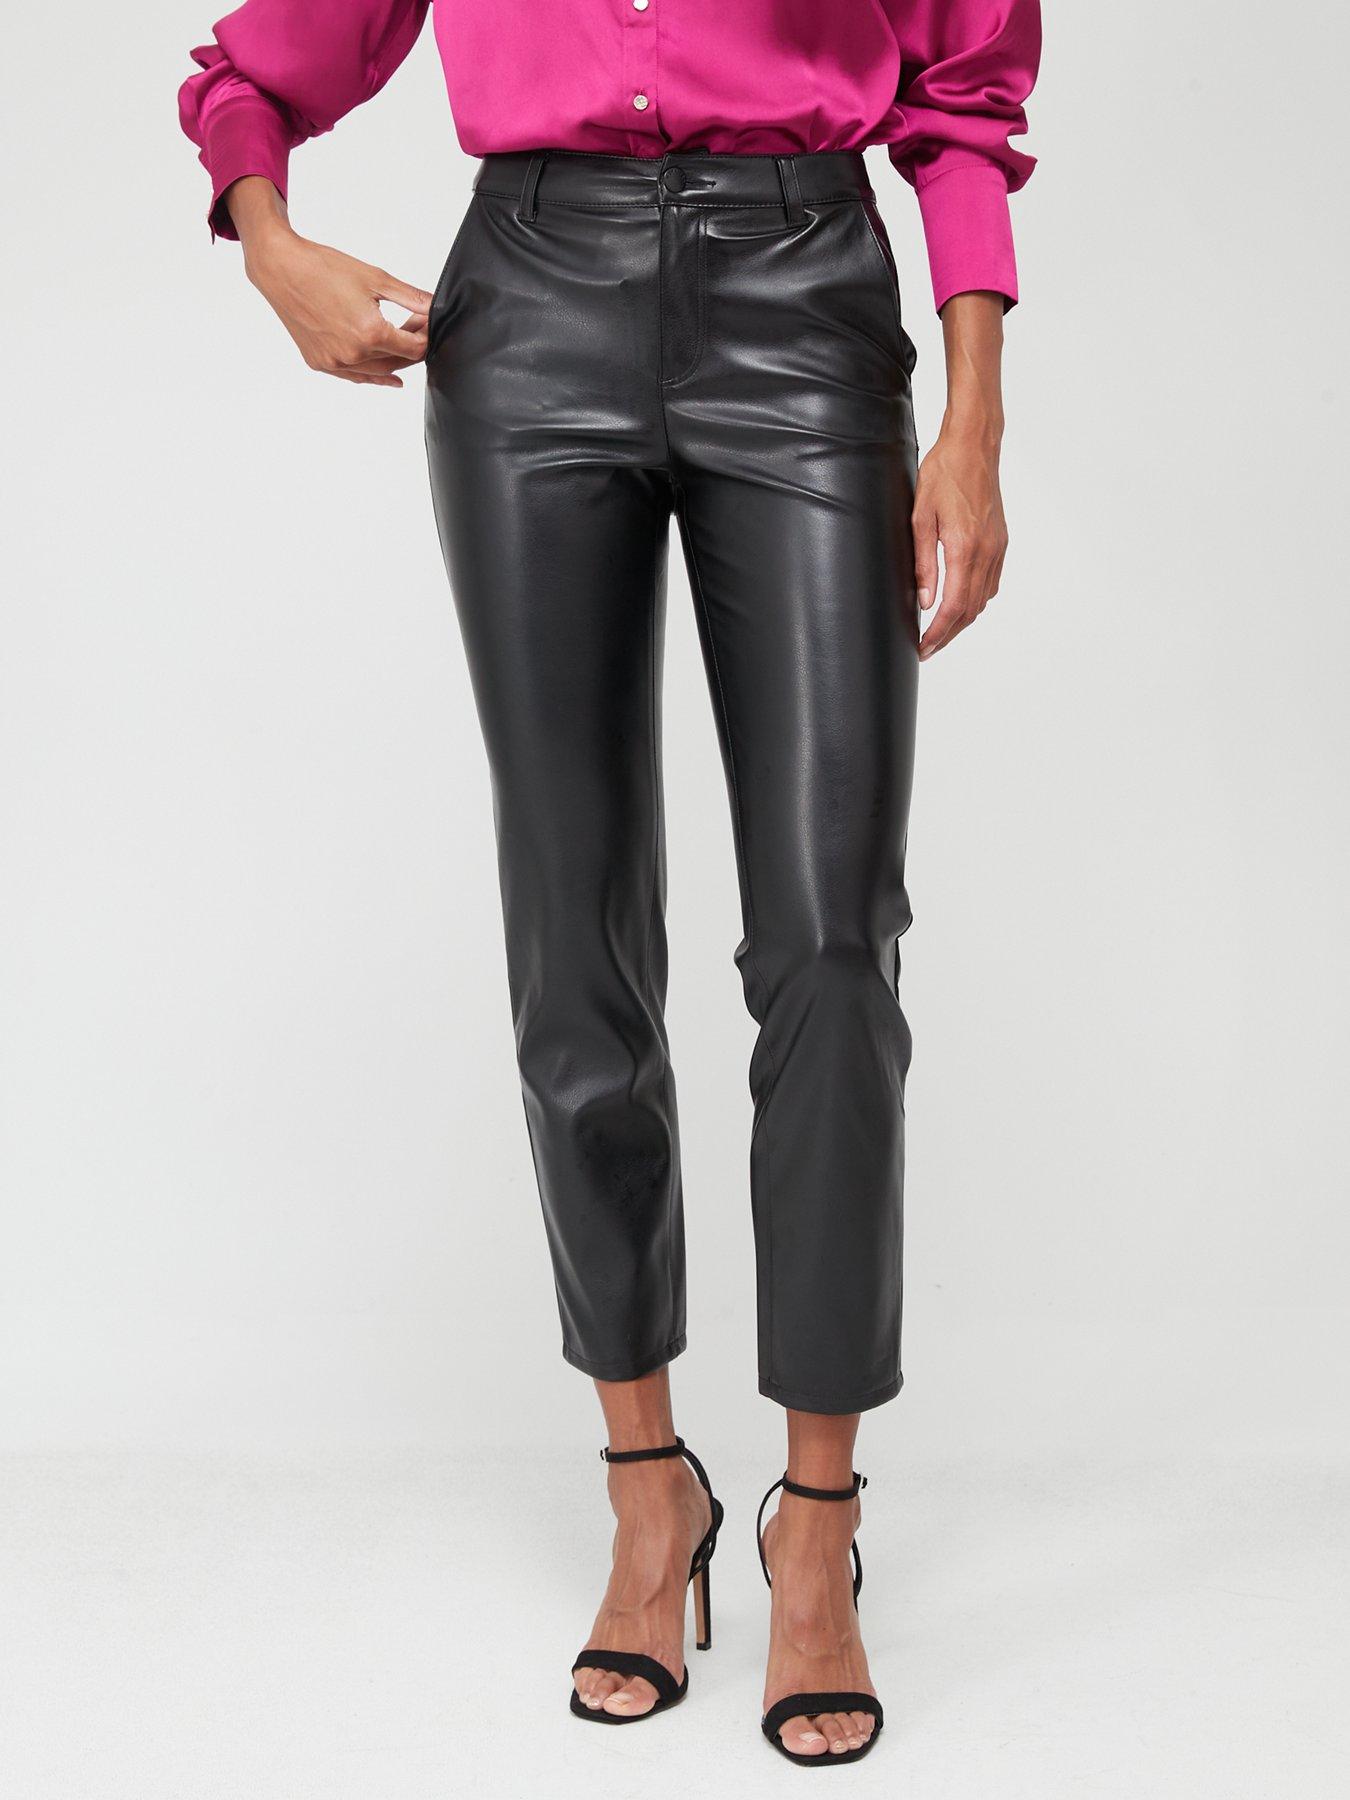 SOSANDAR Black Button Front Faux Leather Trousers RRP £175 size UK